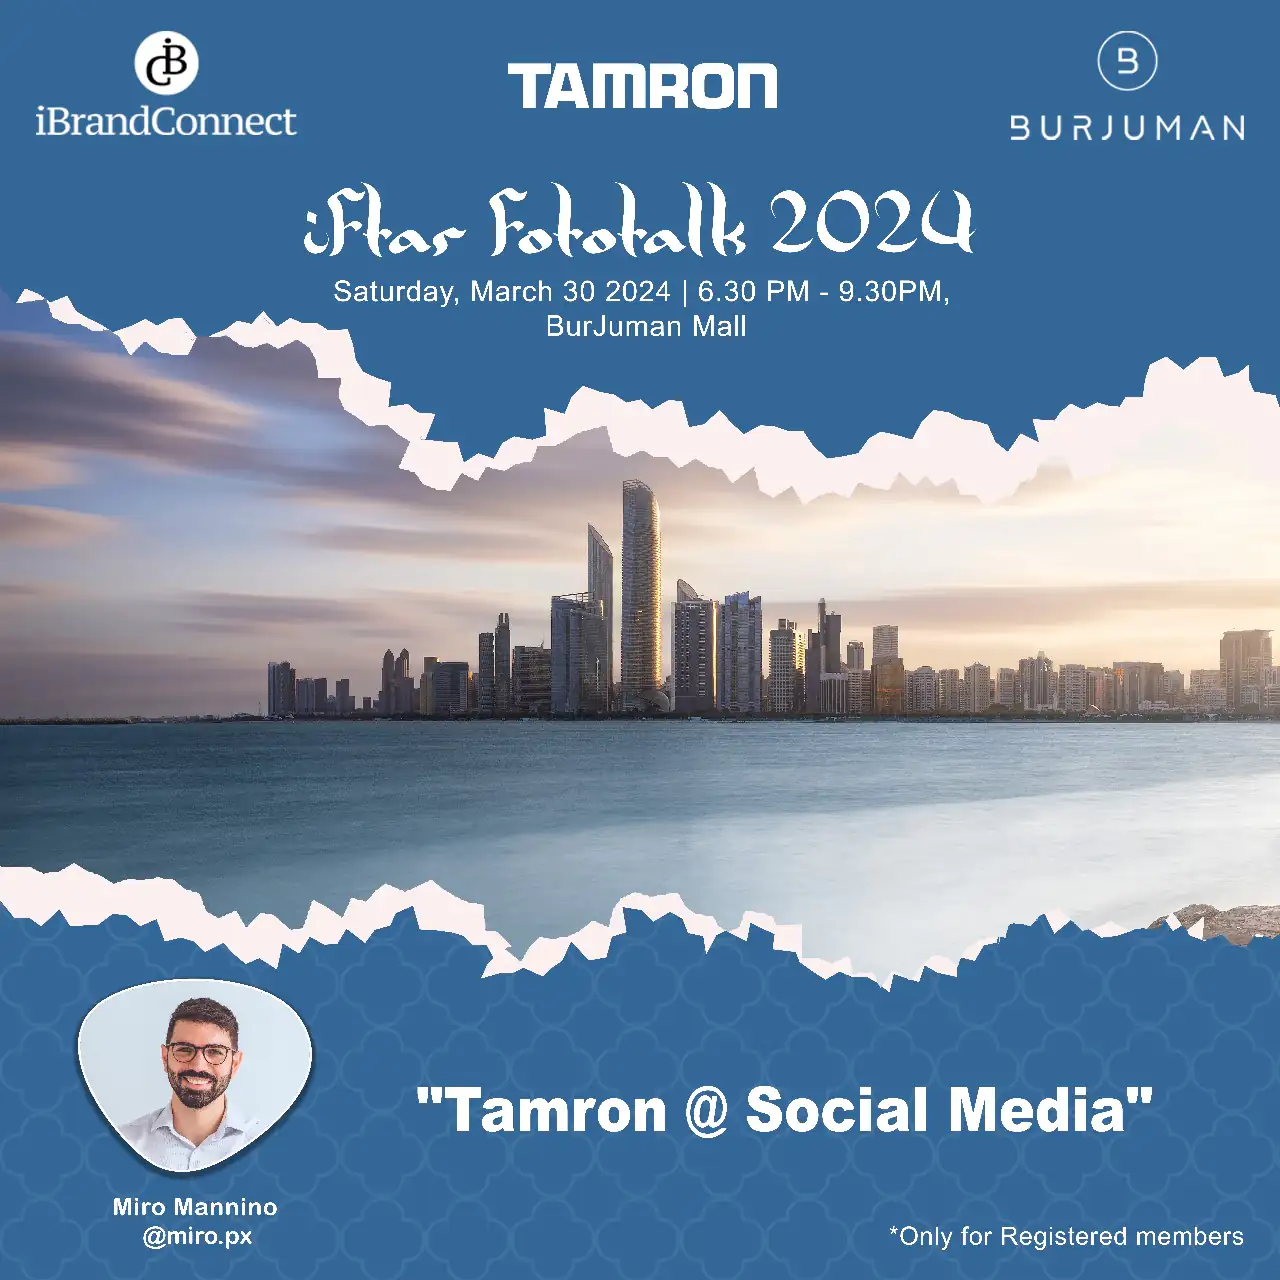 Tamron @ Social Media - Iftar Fototalk 2024 